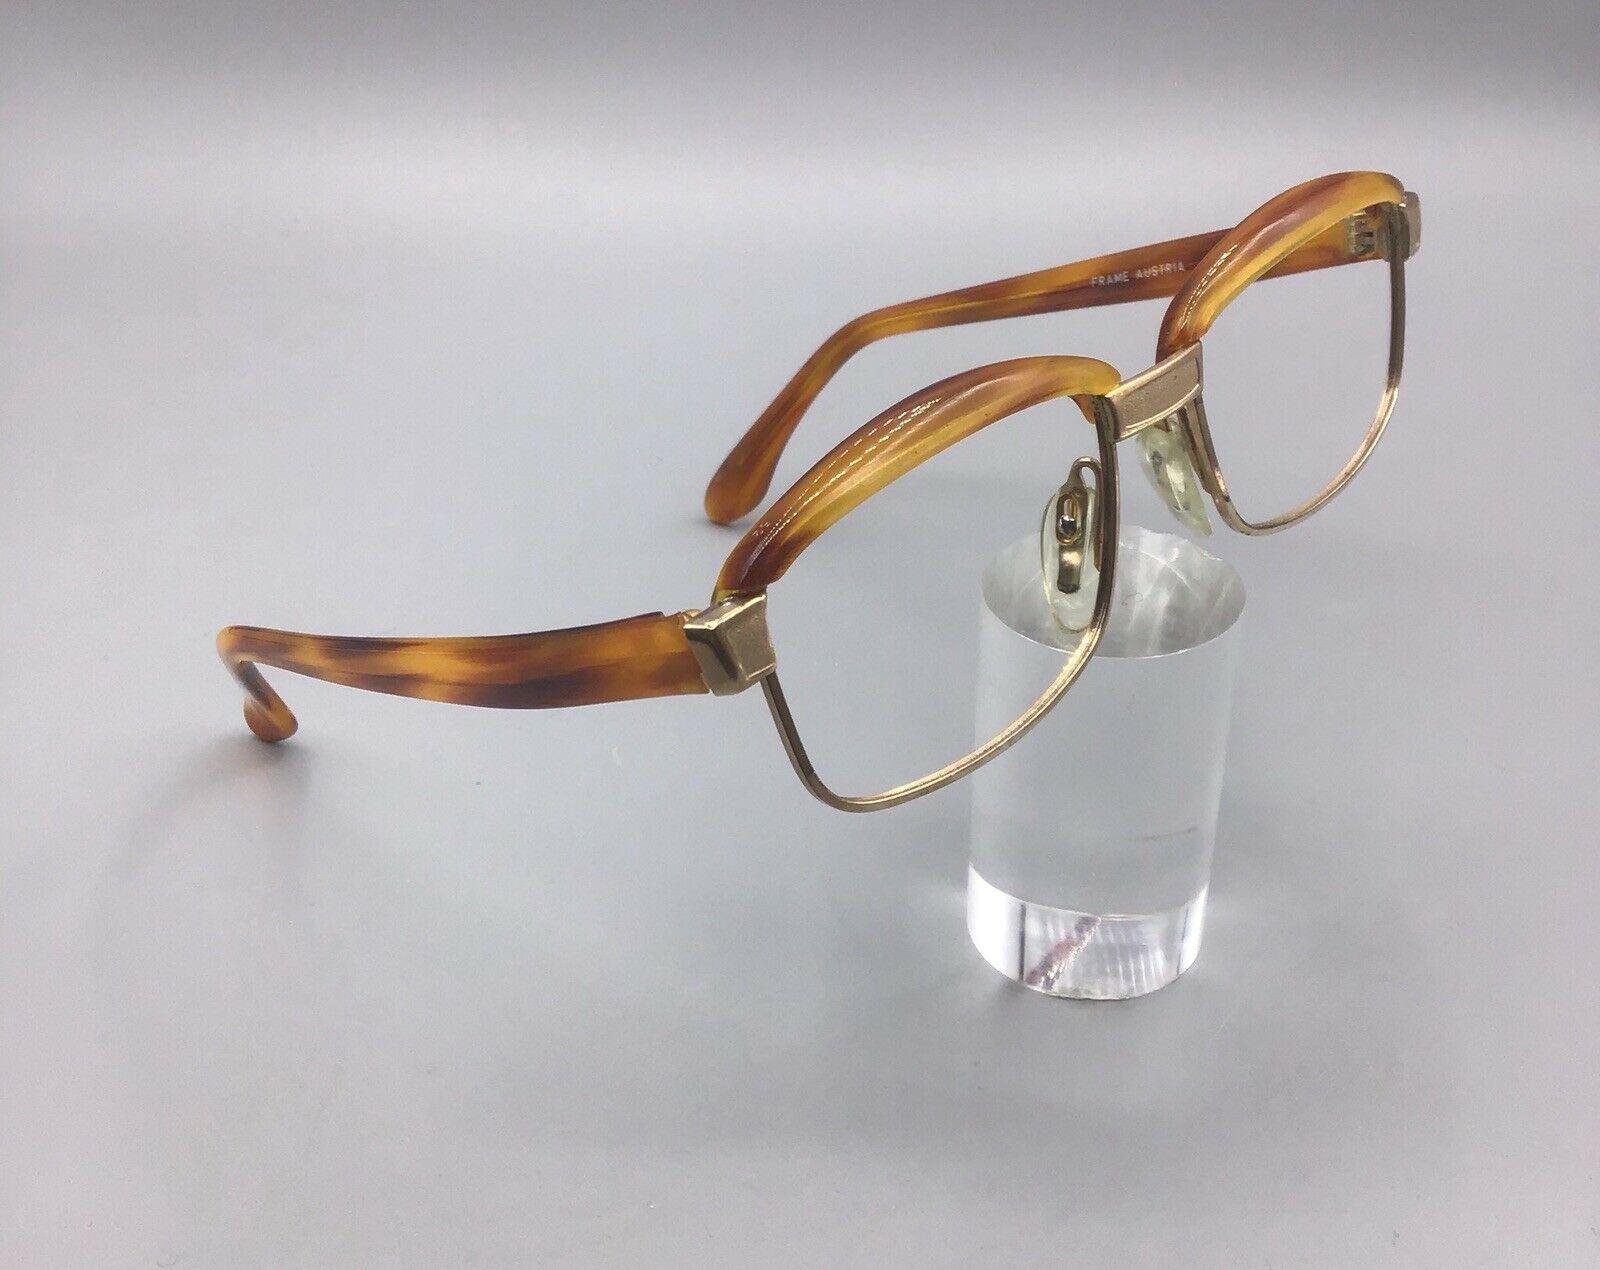 Viennaline frame Austria occhiale vintage eyewear brillen lunettes 1/20 12KGF